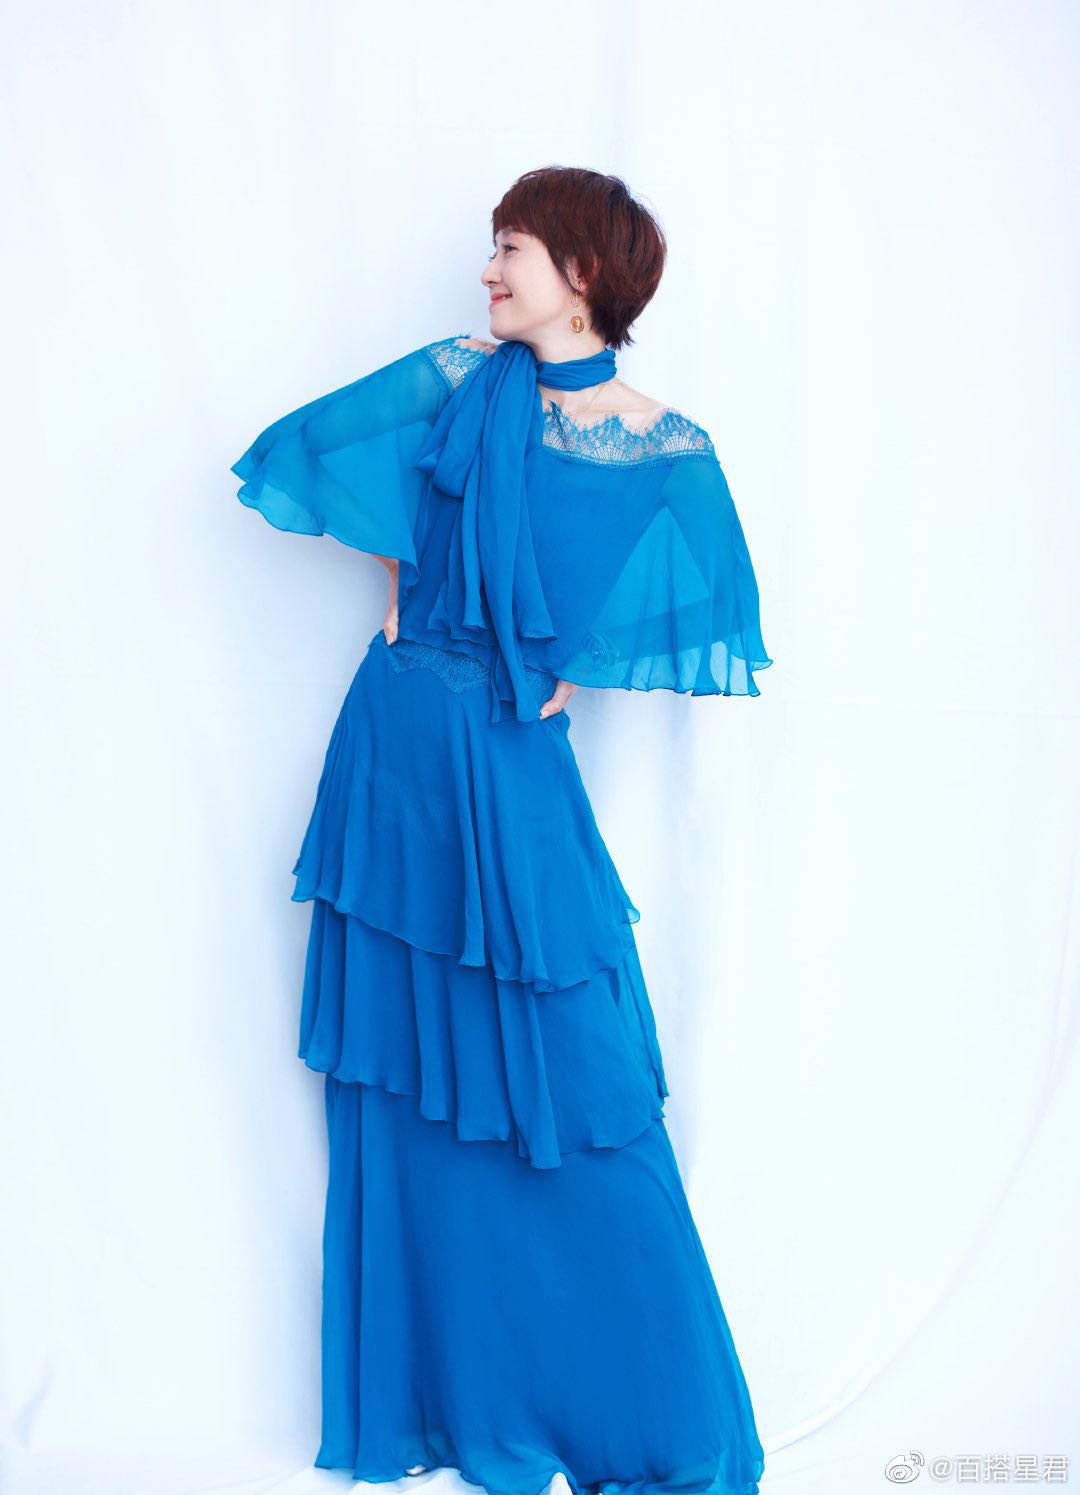 马伊琍活动造型，一袭清新的宝蓝色雪纺长裙，优雅温柔